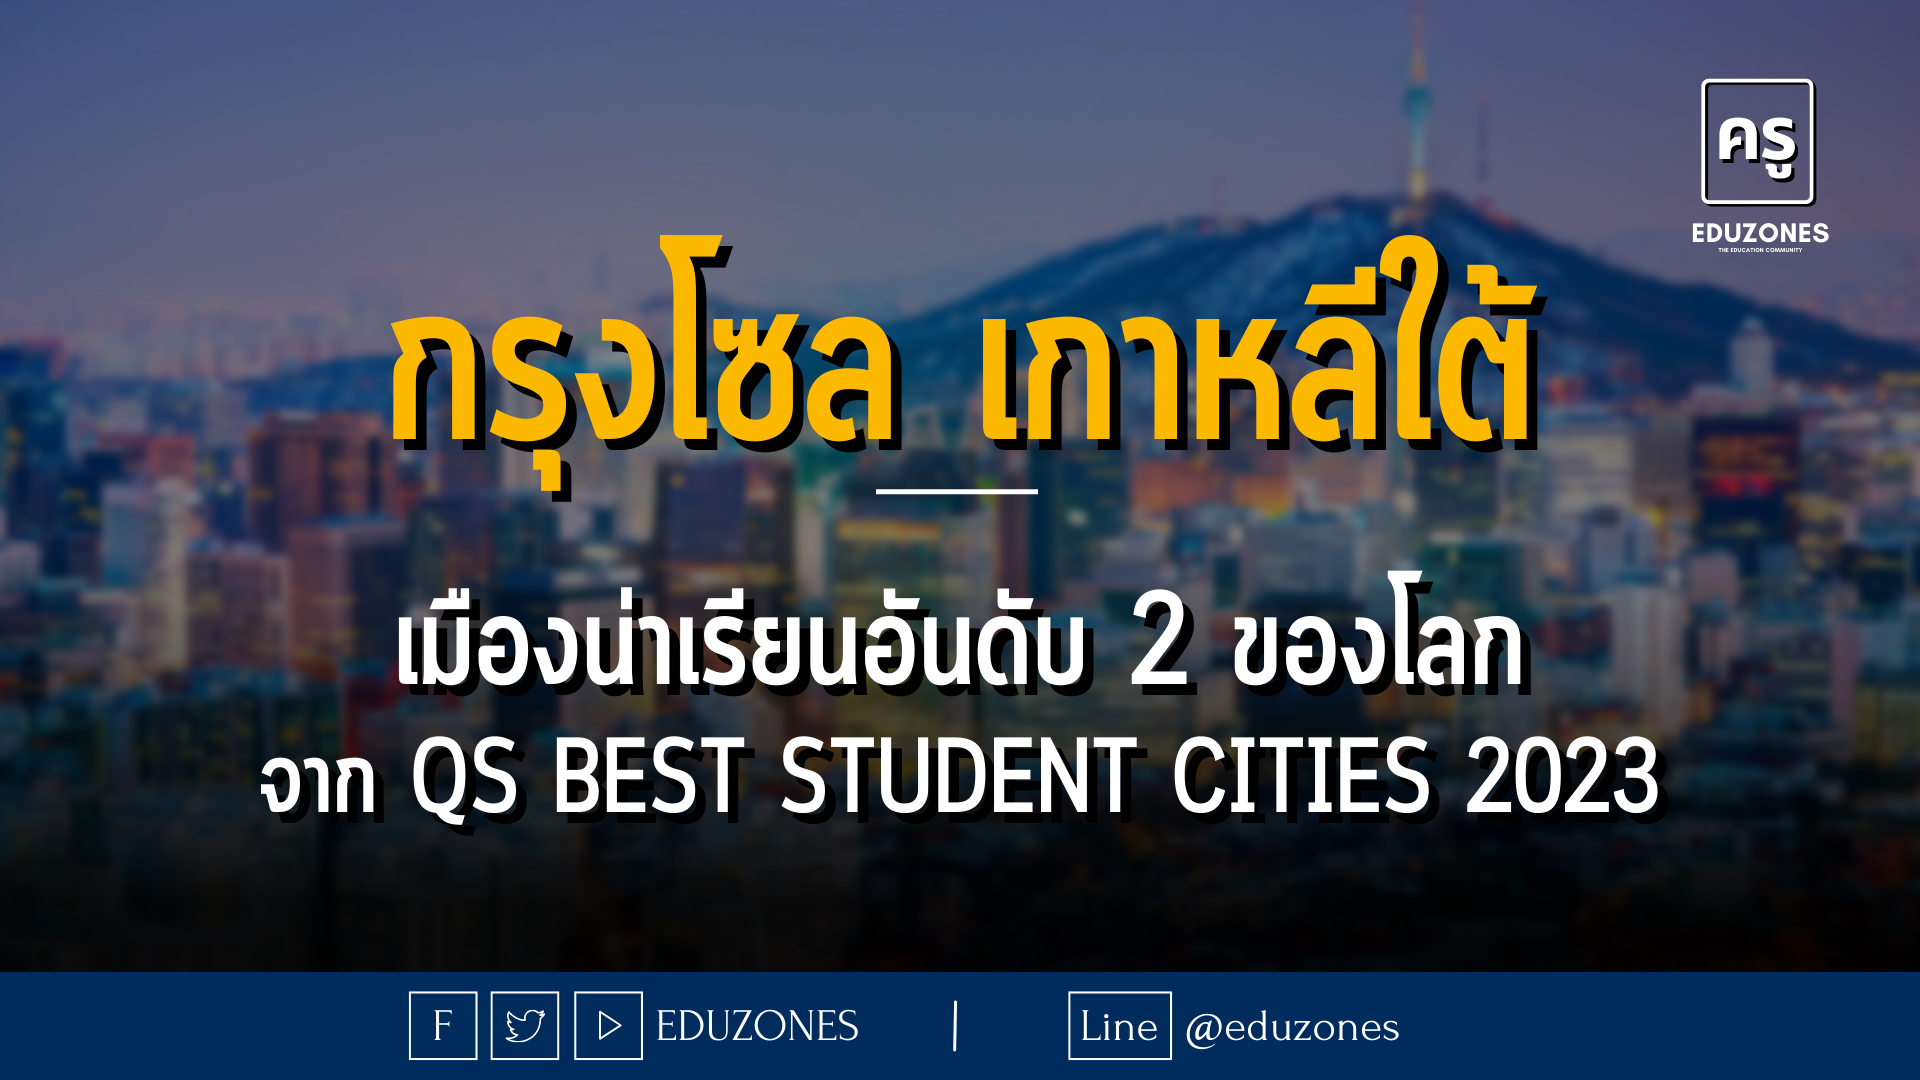 กรุงโซล เกาหลีใต้ เมืองยอดฮิตที่เด็กไทยหลายคนอยากเรียนต่อ! - เมืองน่าเรียนอันดับ 2 ของโลกจาก QS Best Student Cities 2023